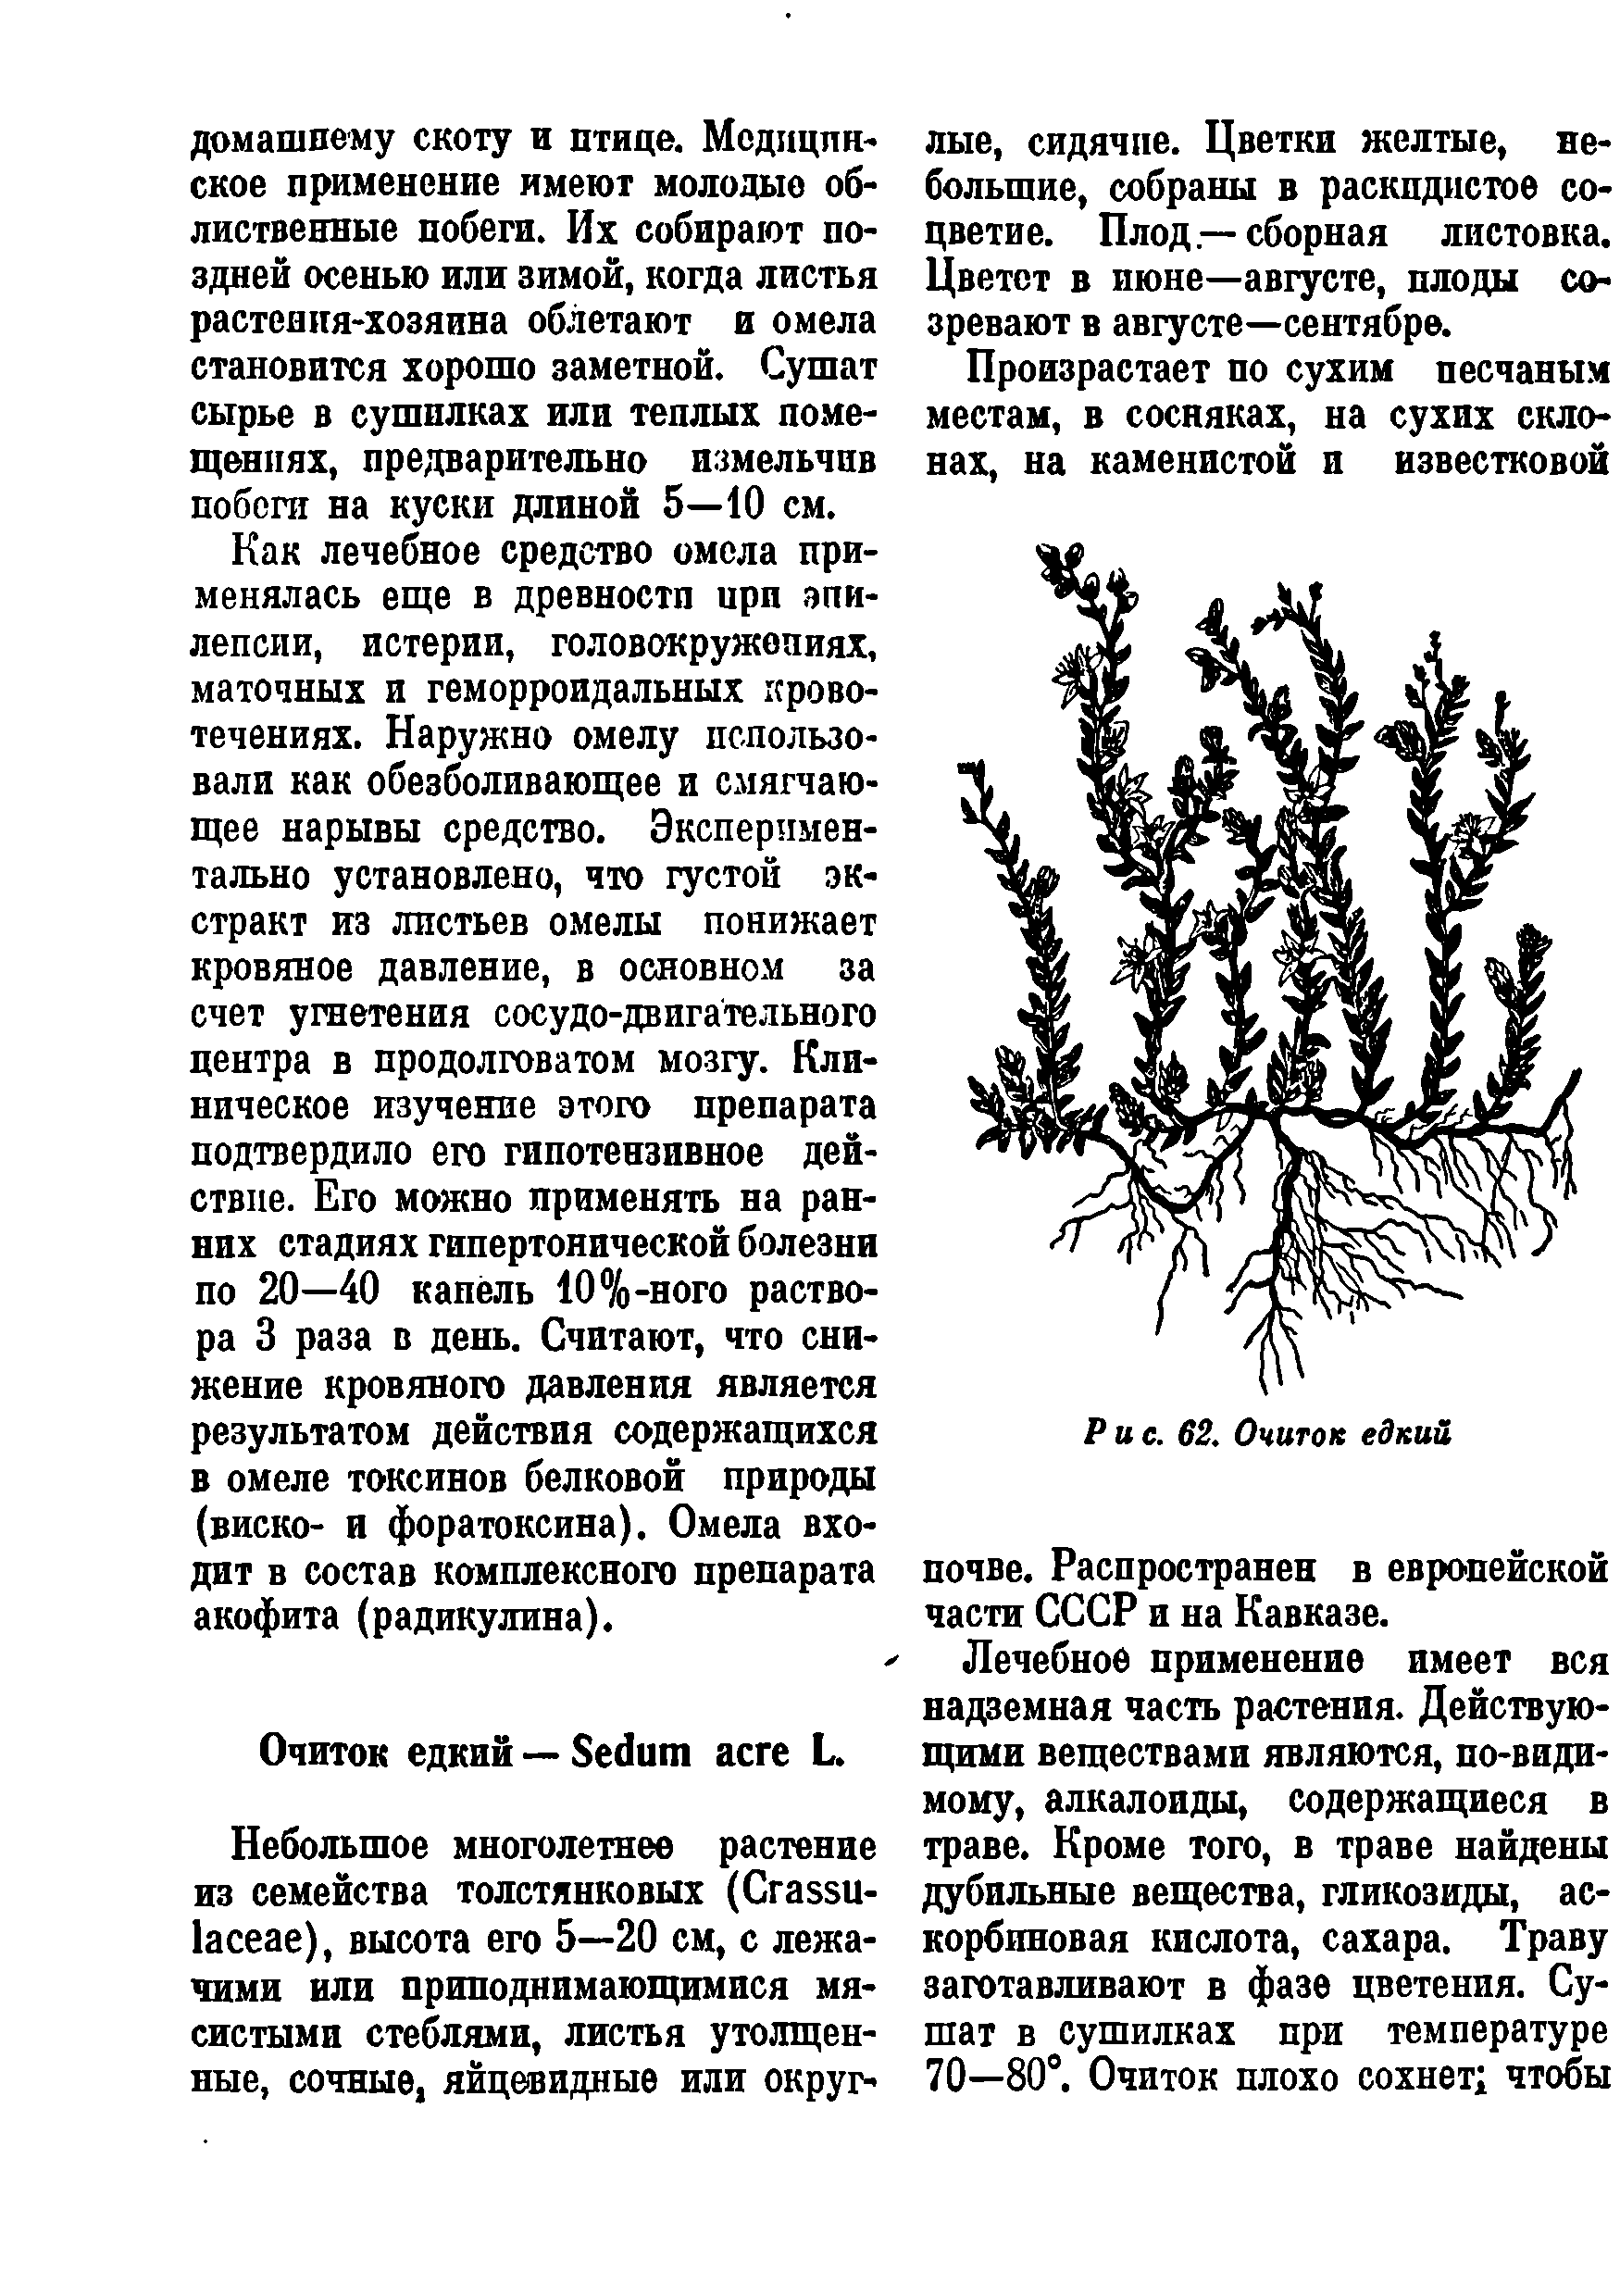 Рис. 62. Очиток едкий почве. Распространен в европейской части СССР и на Кавказе.